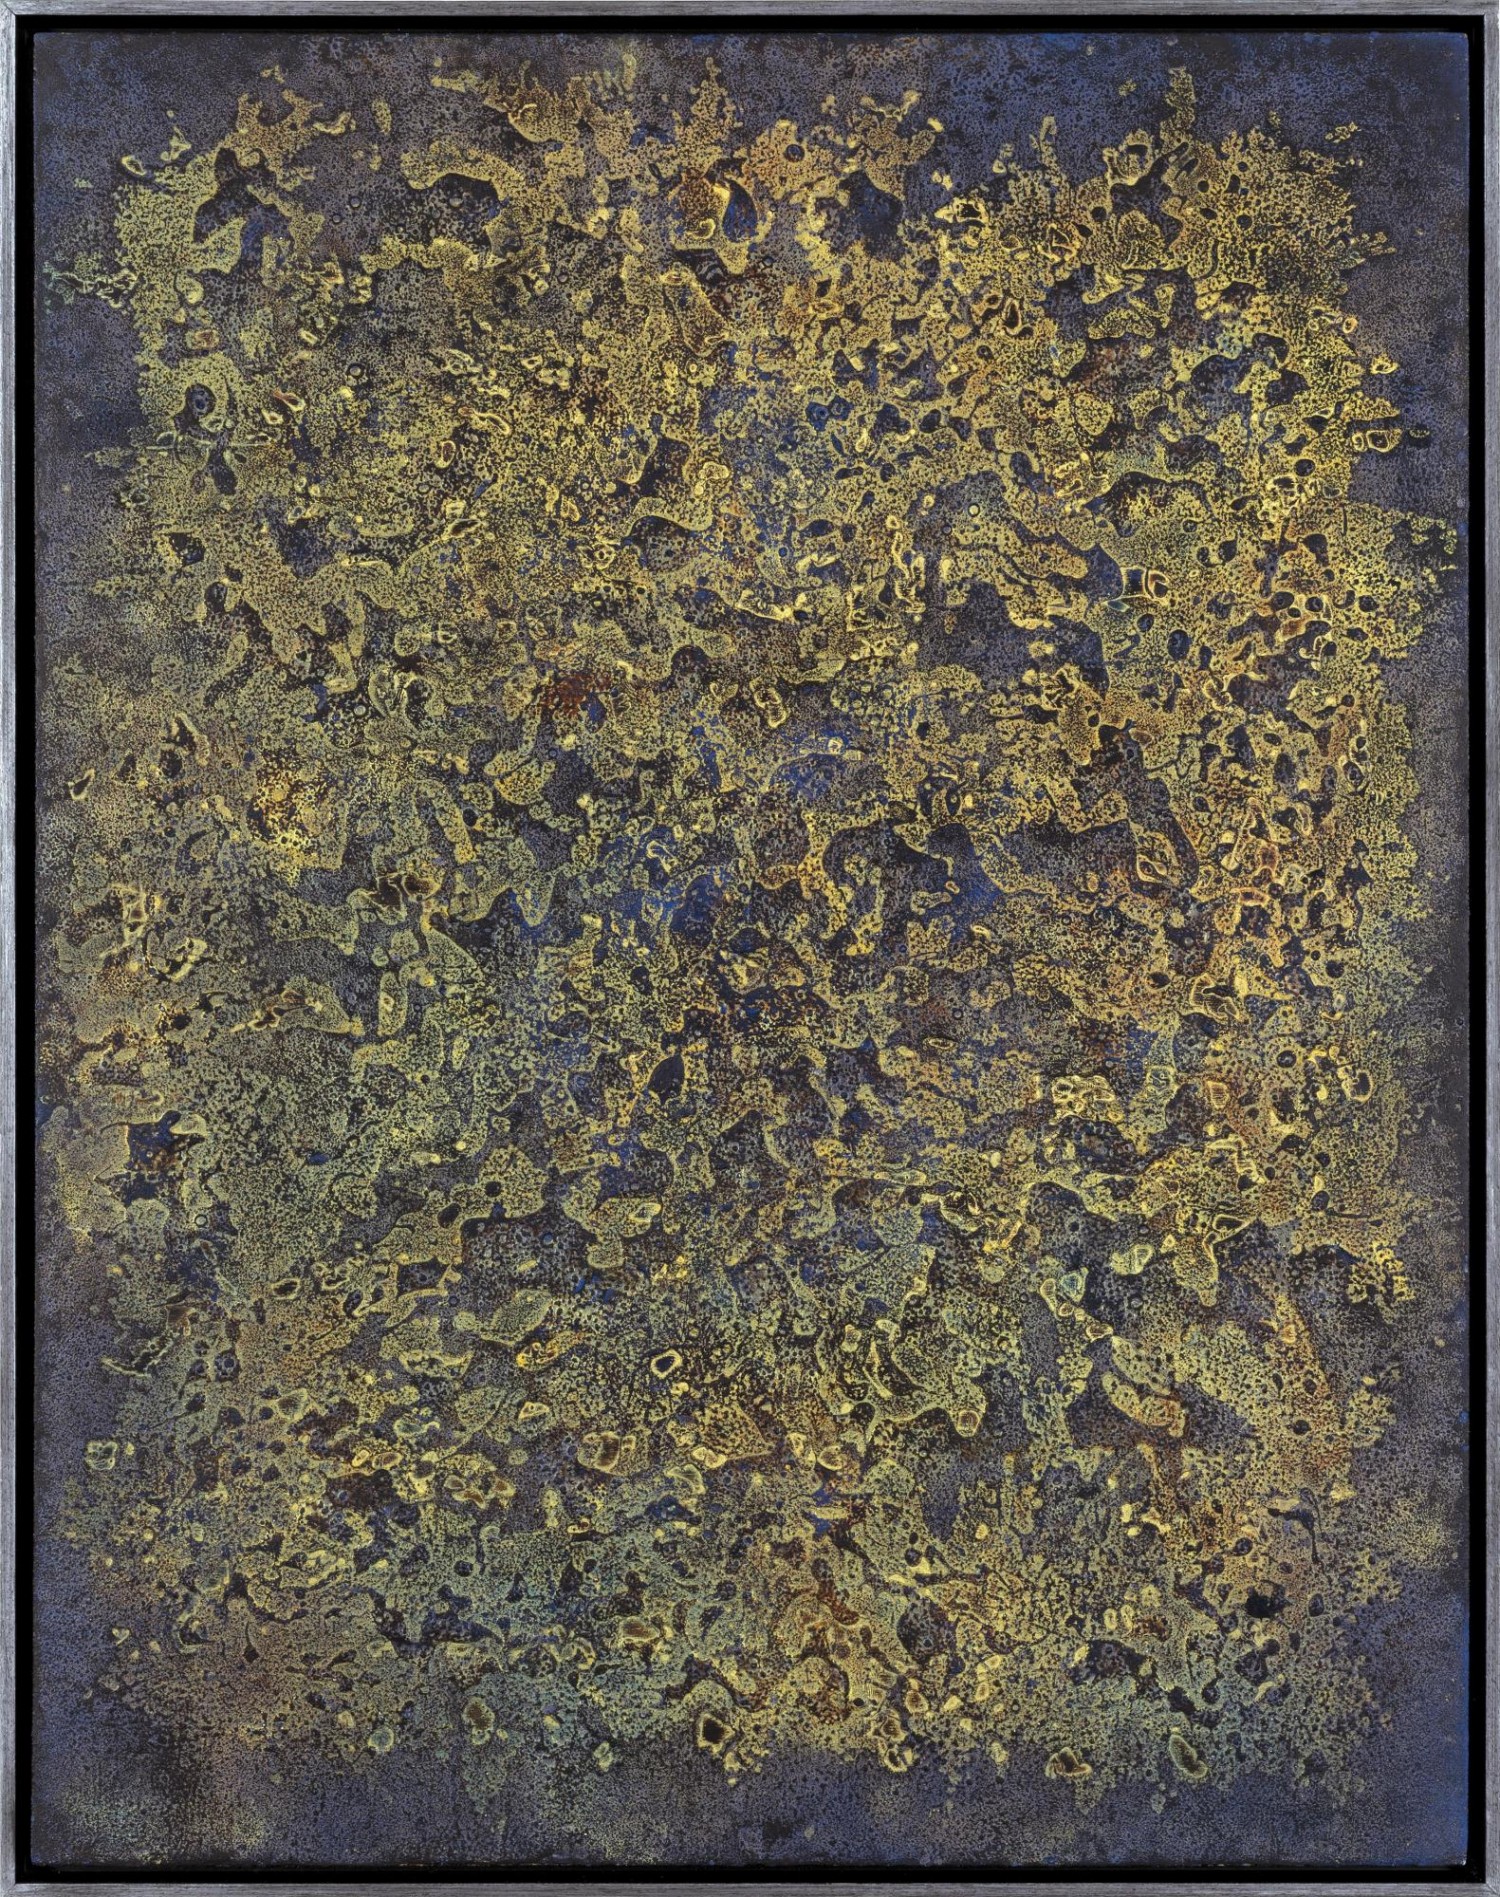 Robert Piesen: Obraz, 1970, kombinovaná technika na desce, 83 × 65 cm, 1. Art Consulting 23. 10. 2022, vyvolávací cena: 650 000 Kč + provize ve výši 20%